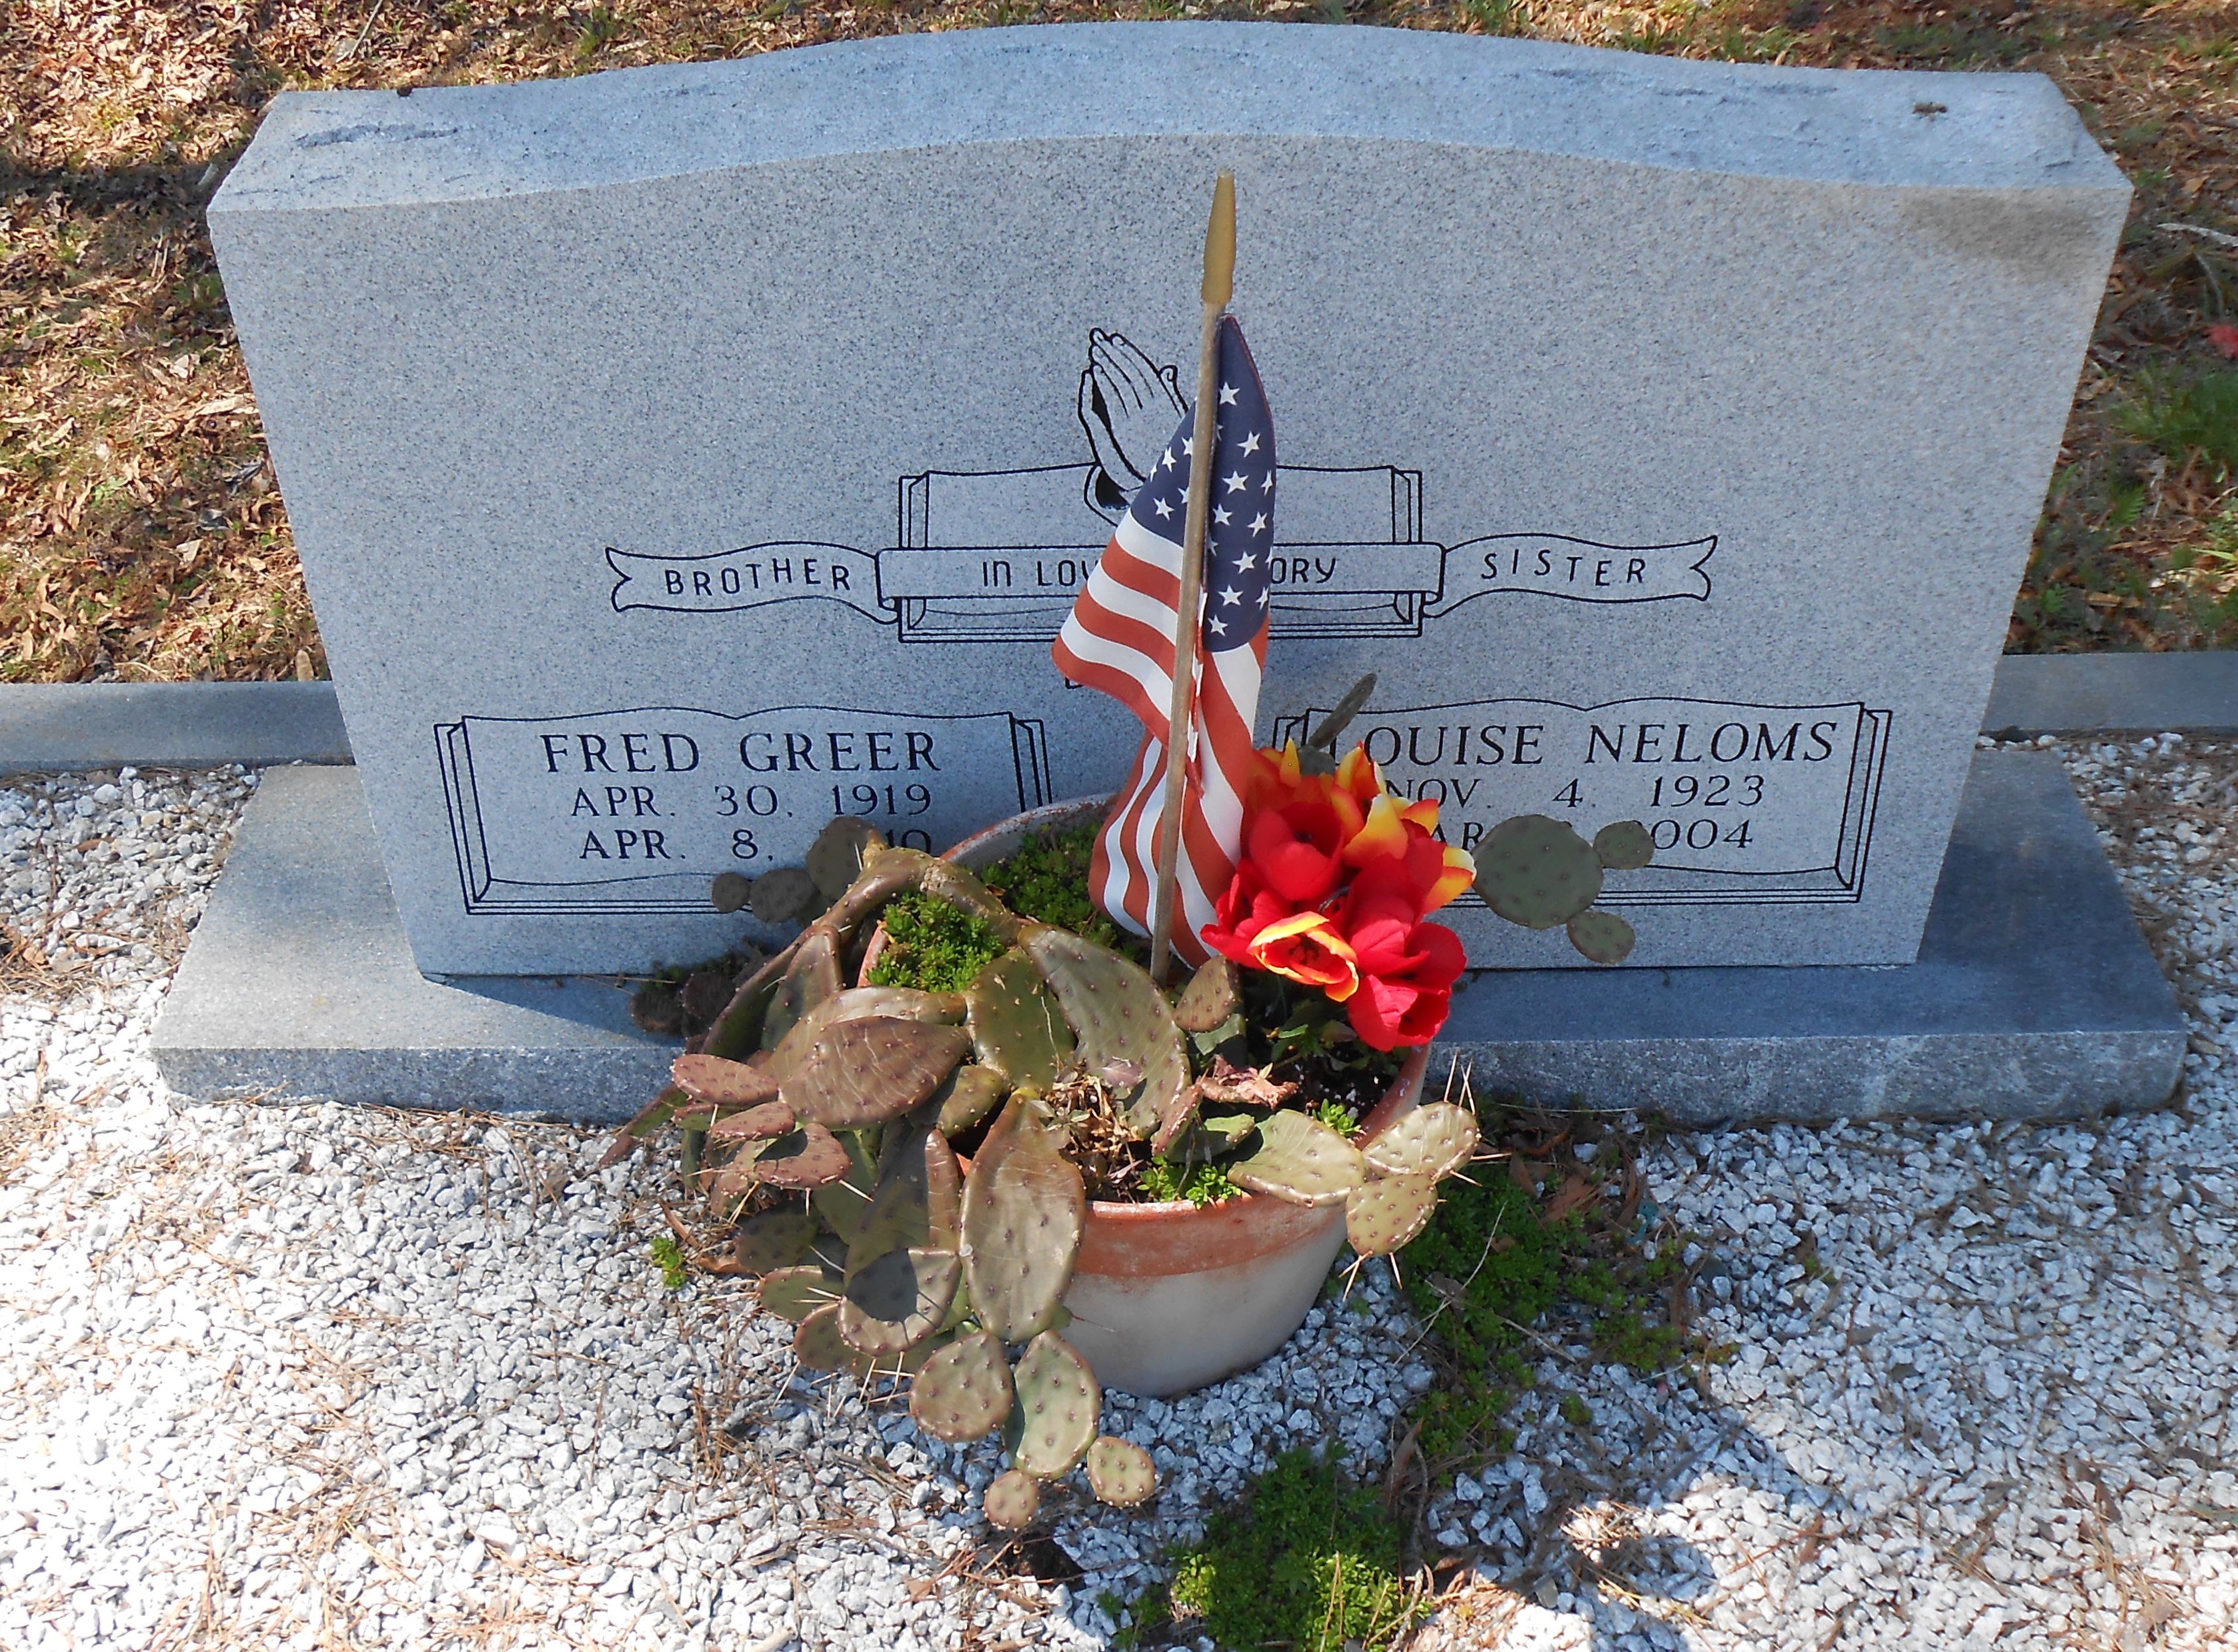 Fred Greer & Louise Neloms gravesite